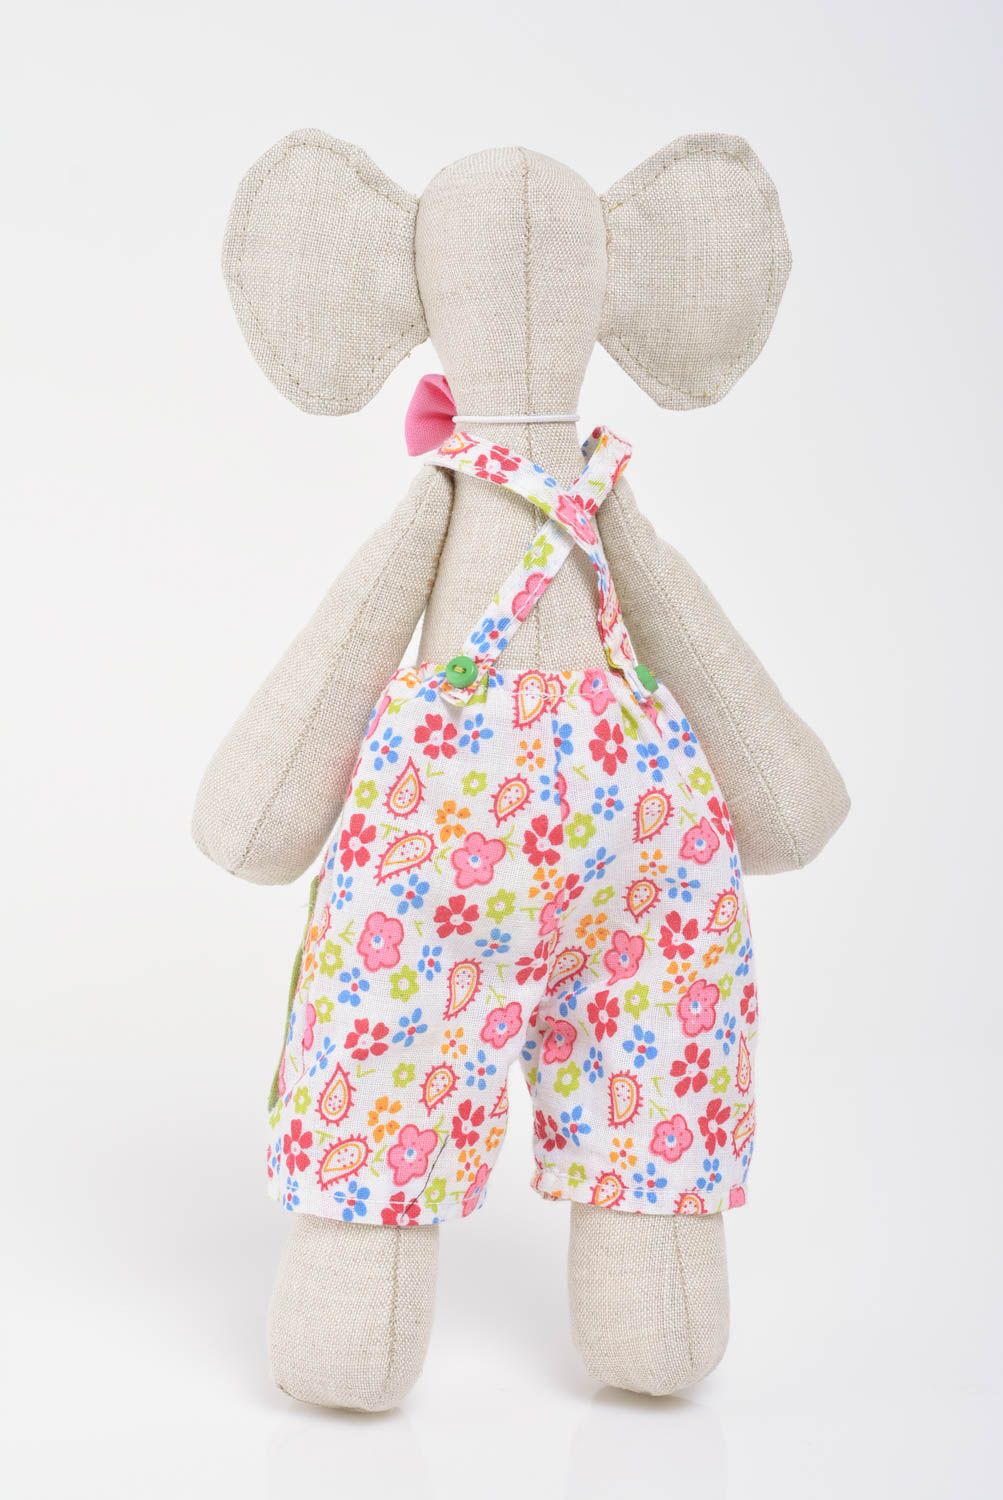 Мягкая игрушка ручной работы слоник в цветочном костюме из льна и хлопка фото 3